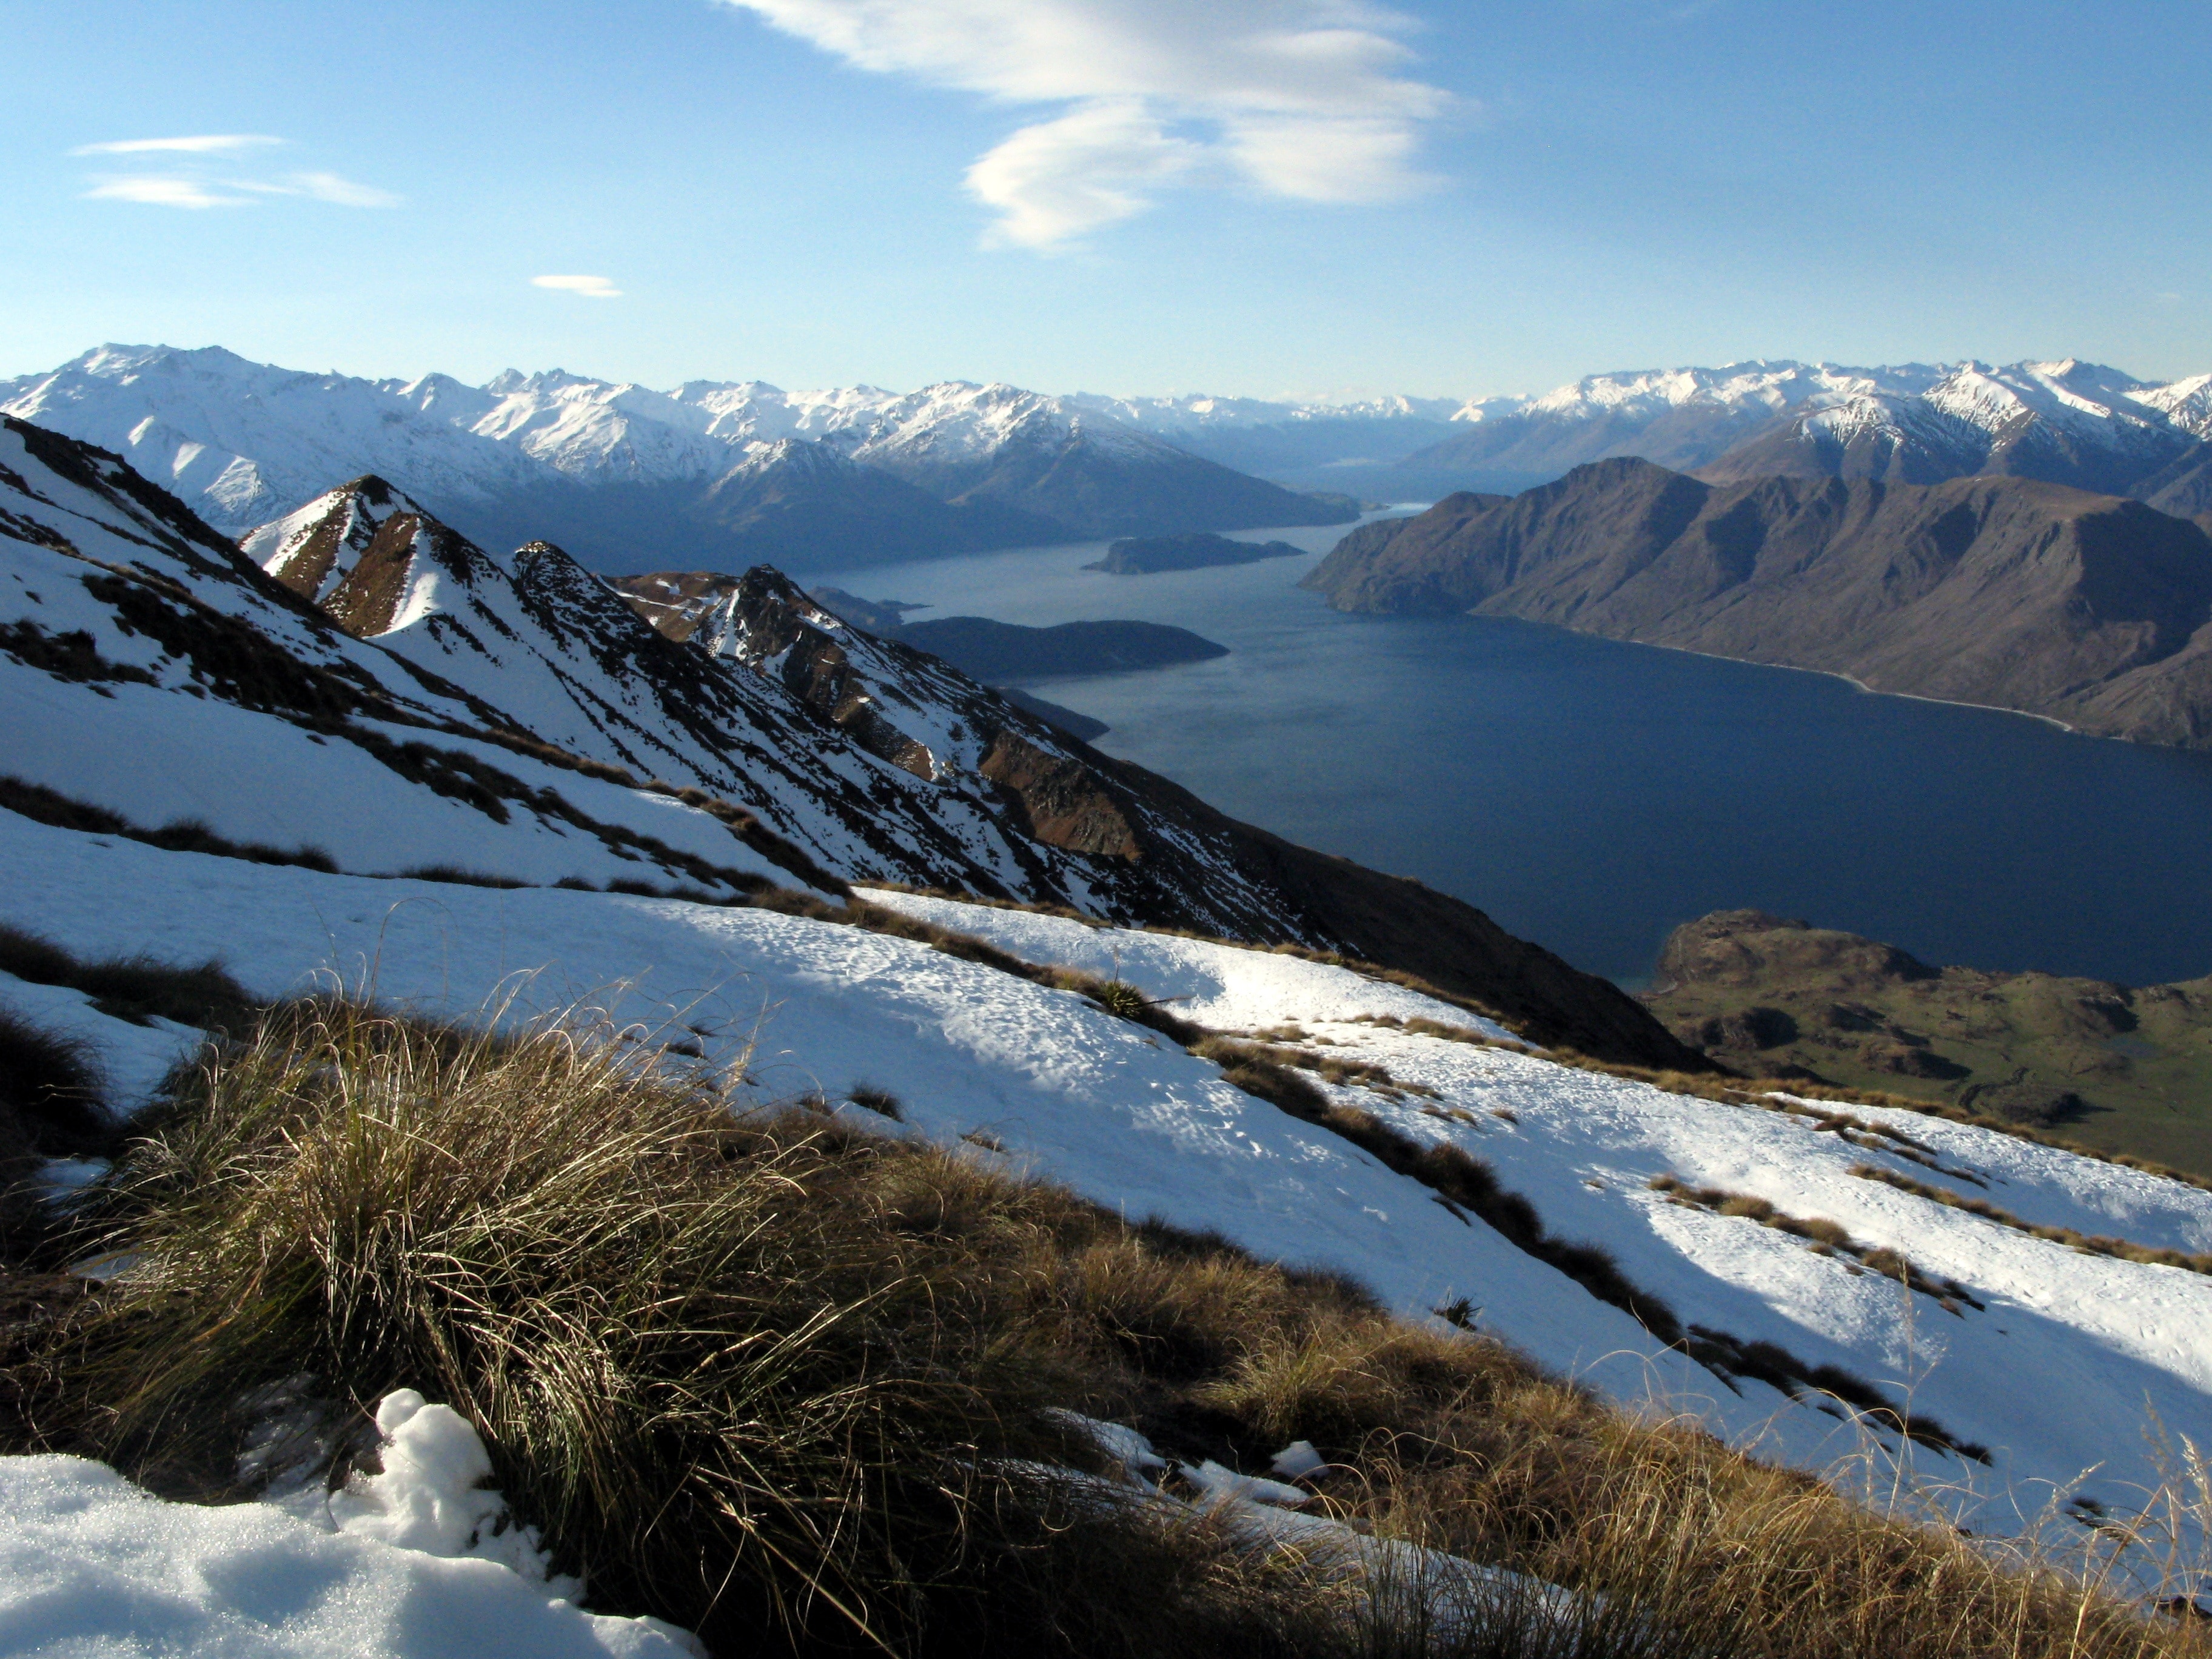 Lake, New Zealand, Mountain, mountain, snow